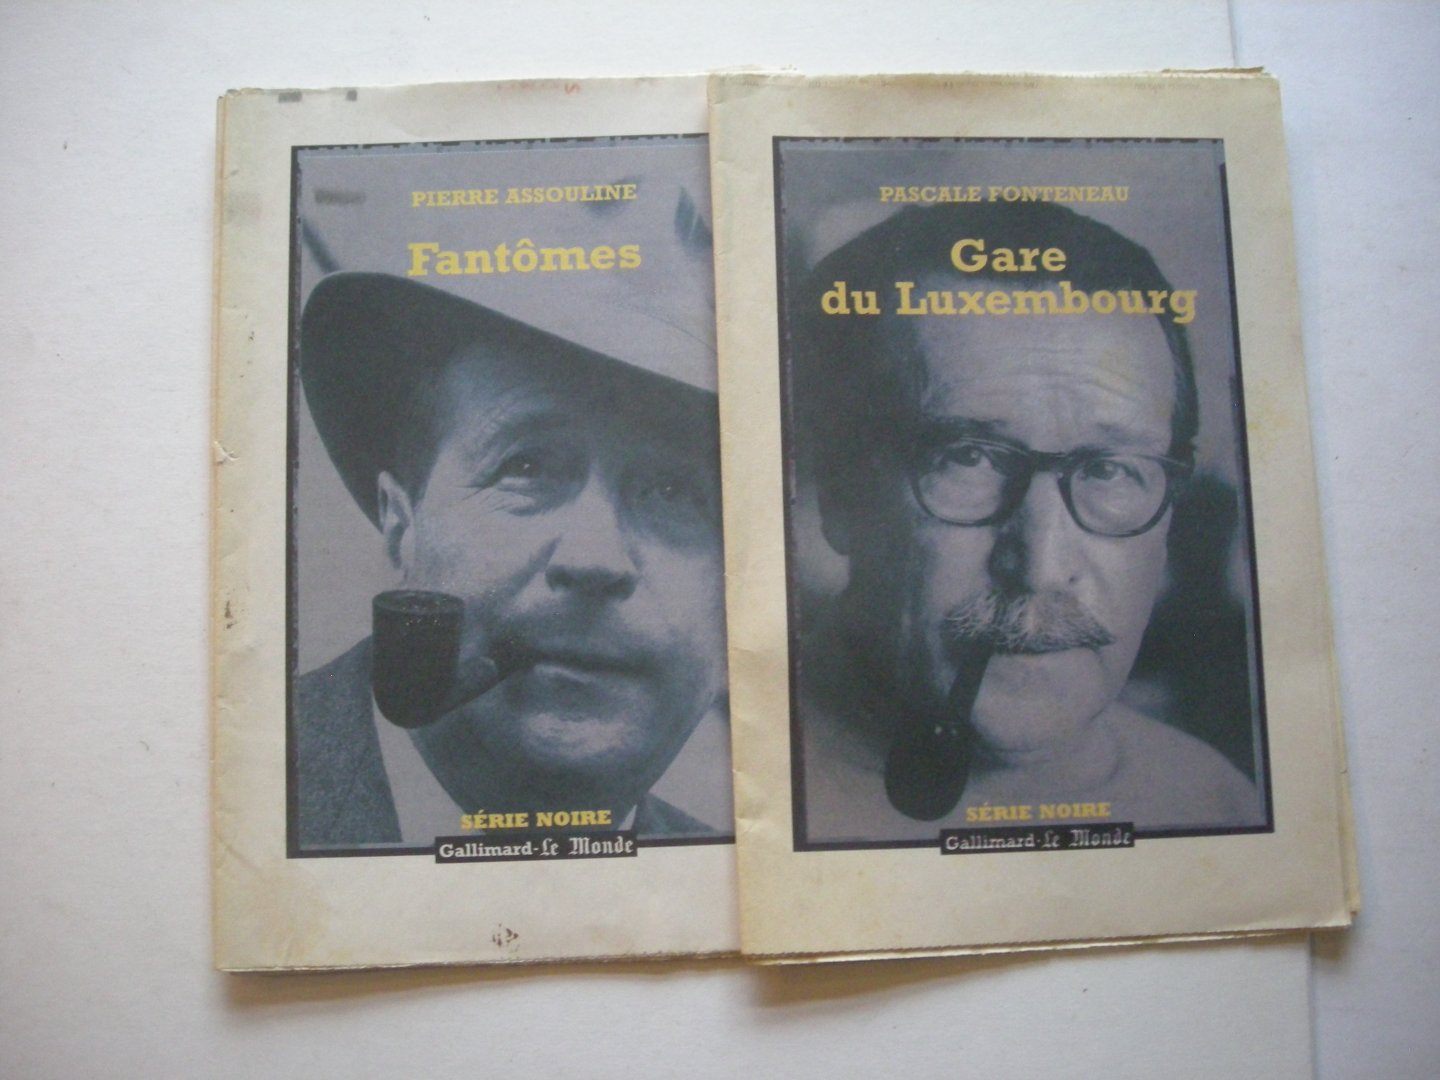 Poirot-Delpech ,B. /  Assouline, P./ Fonteneau, P. - Attentat sous la coupole / Fantomes / Gare du Luxembourg